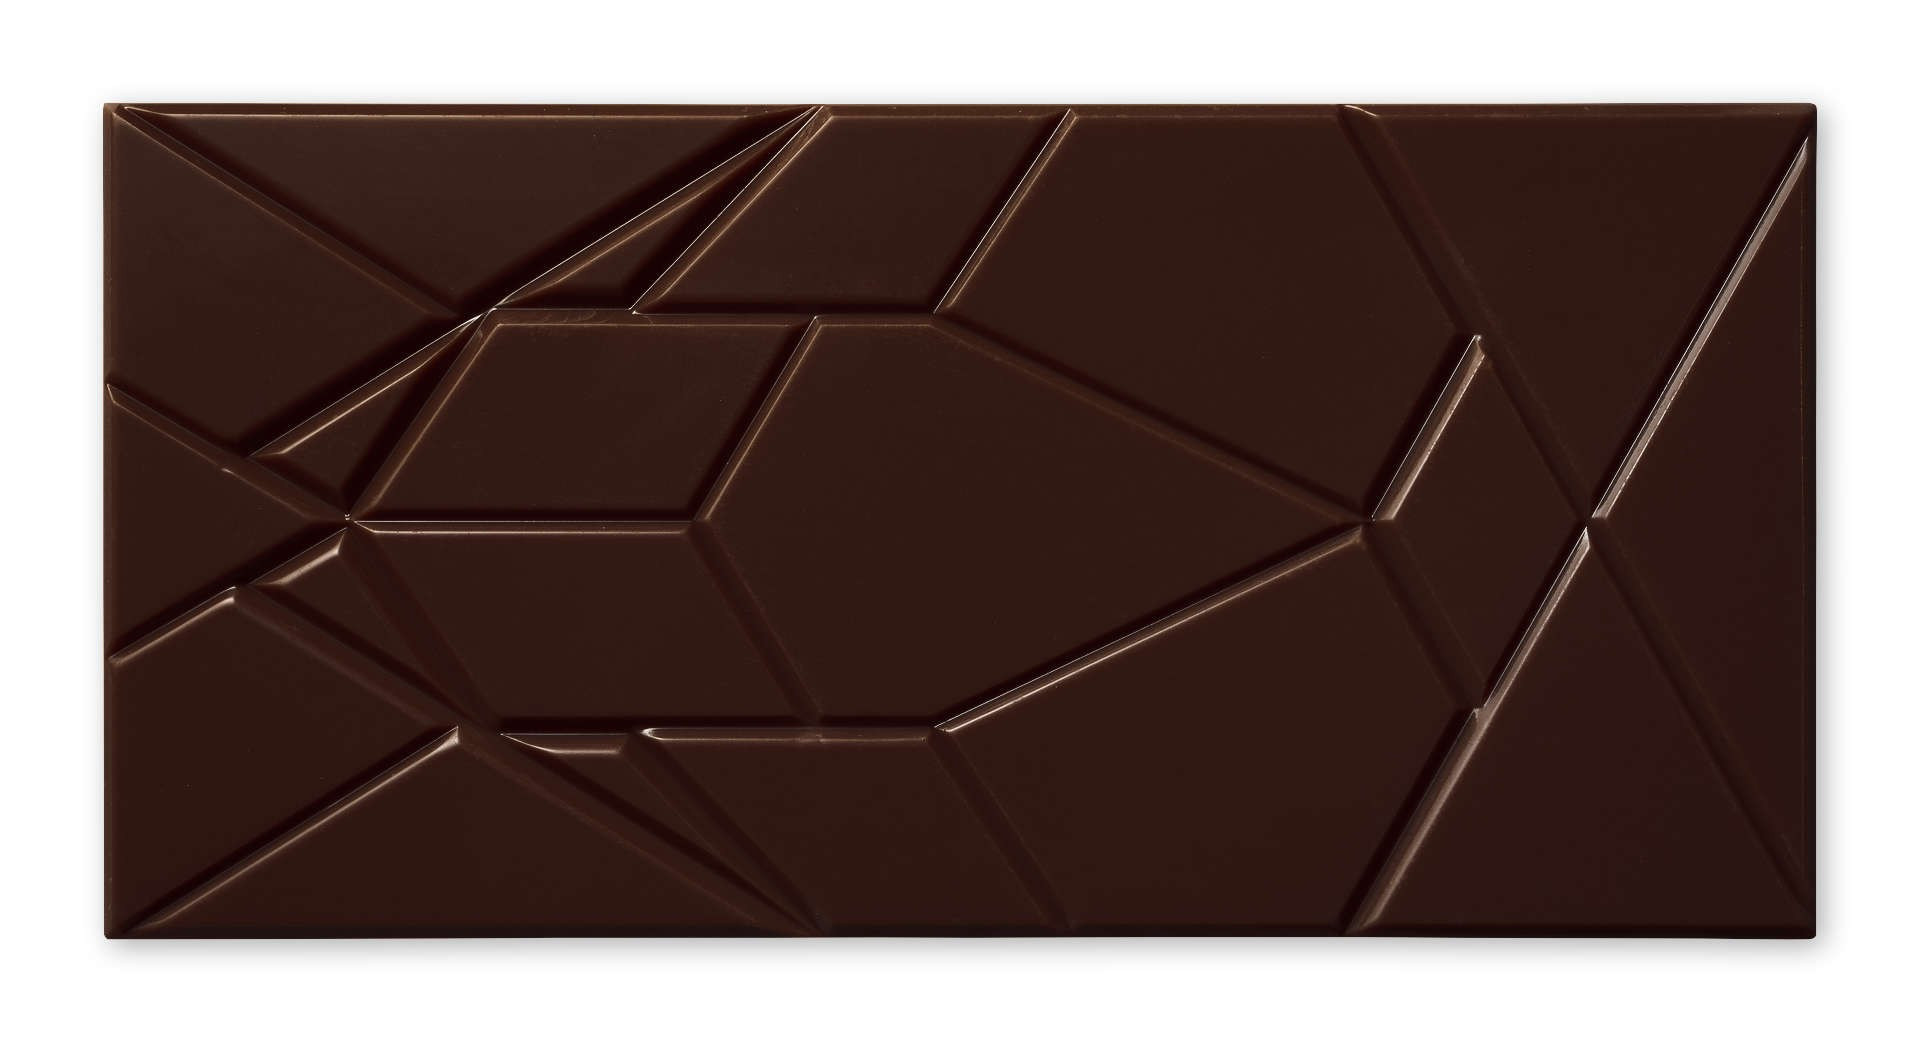 Schokoladentafel "Nicaragua 73%" von Omnom in dunkelbraun - unverpackt